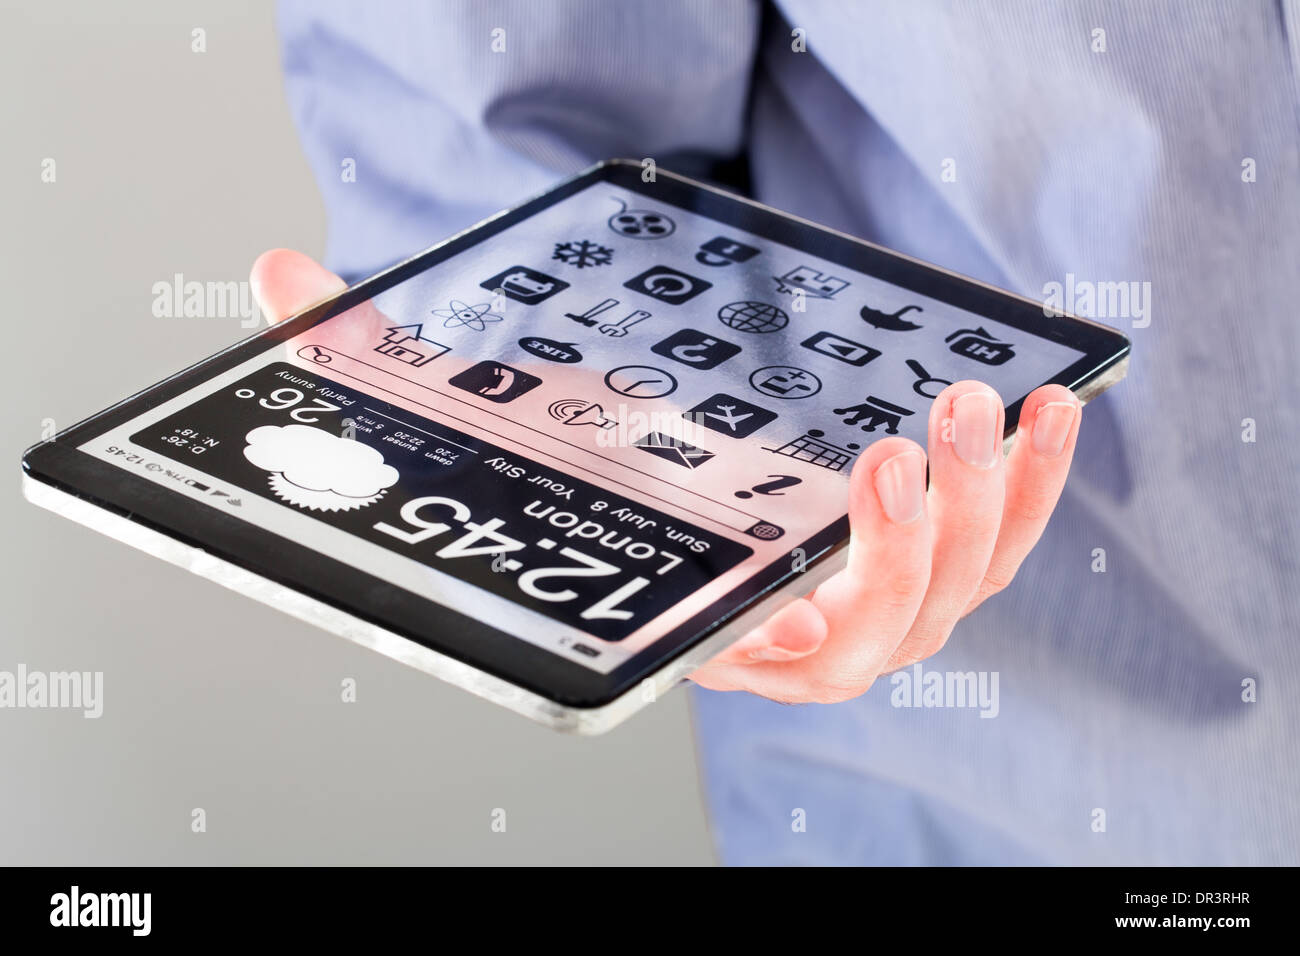 Tablet mit einem transparenten Display in Menschenhand. Tatsächliche  zukünftige innovative Konzeptideen und besten Technologien Menschlichkeit  Stockfotografie - Alamy